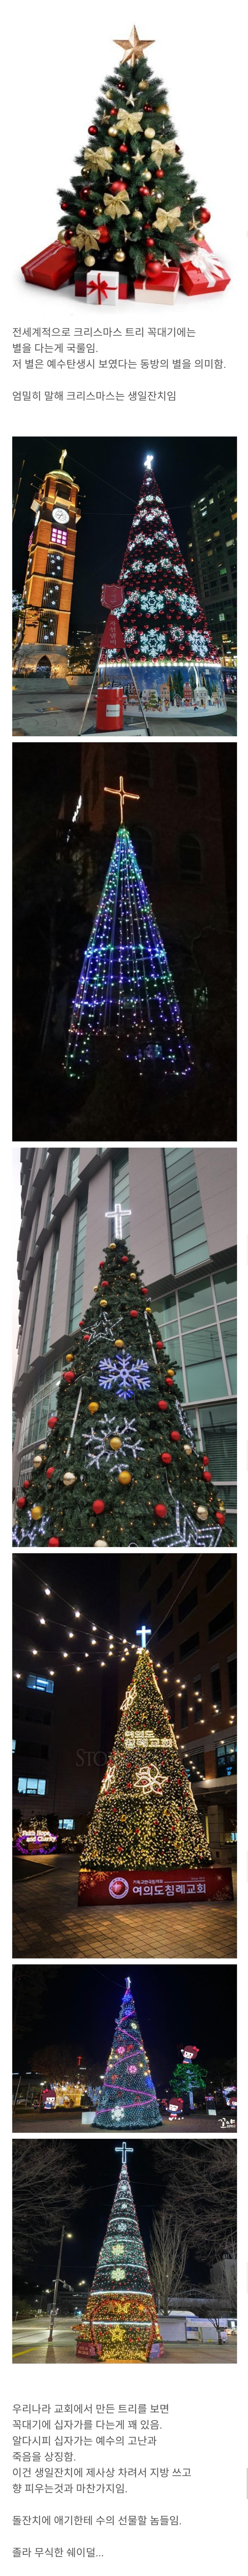 韓国の一部の教会のクリスマス·ツリー